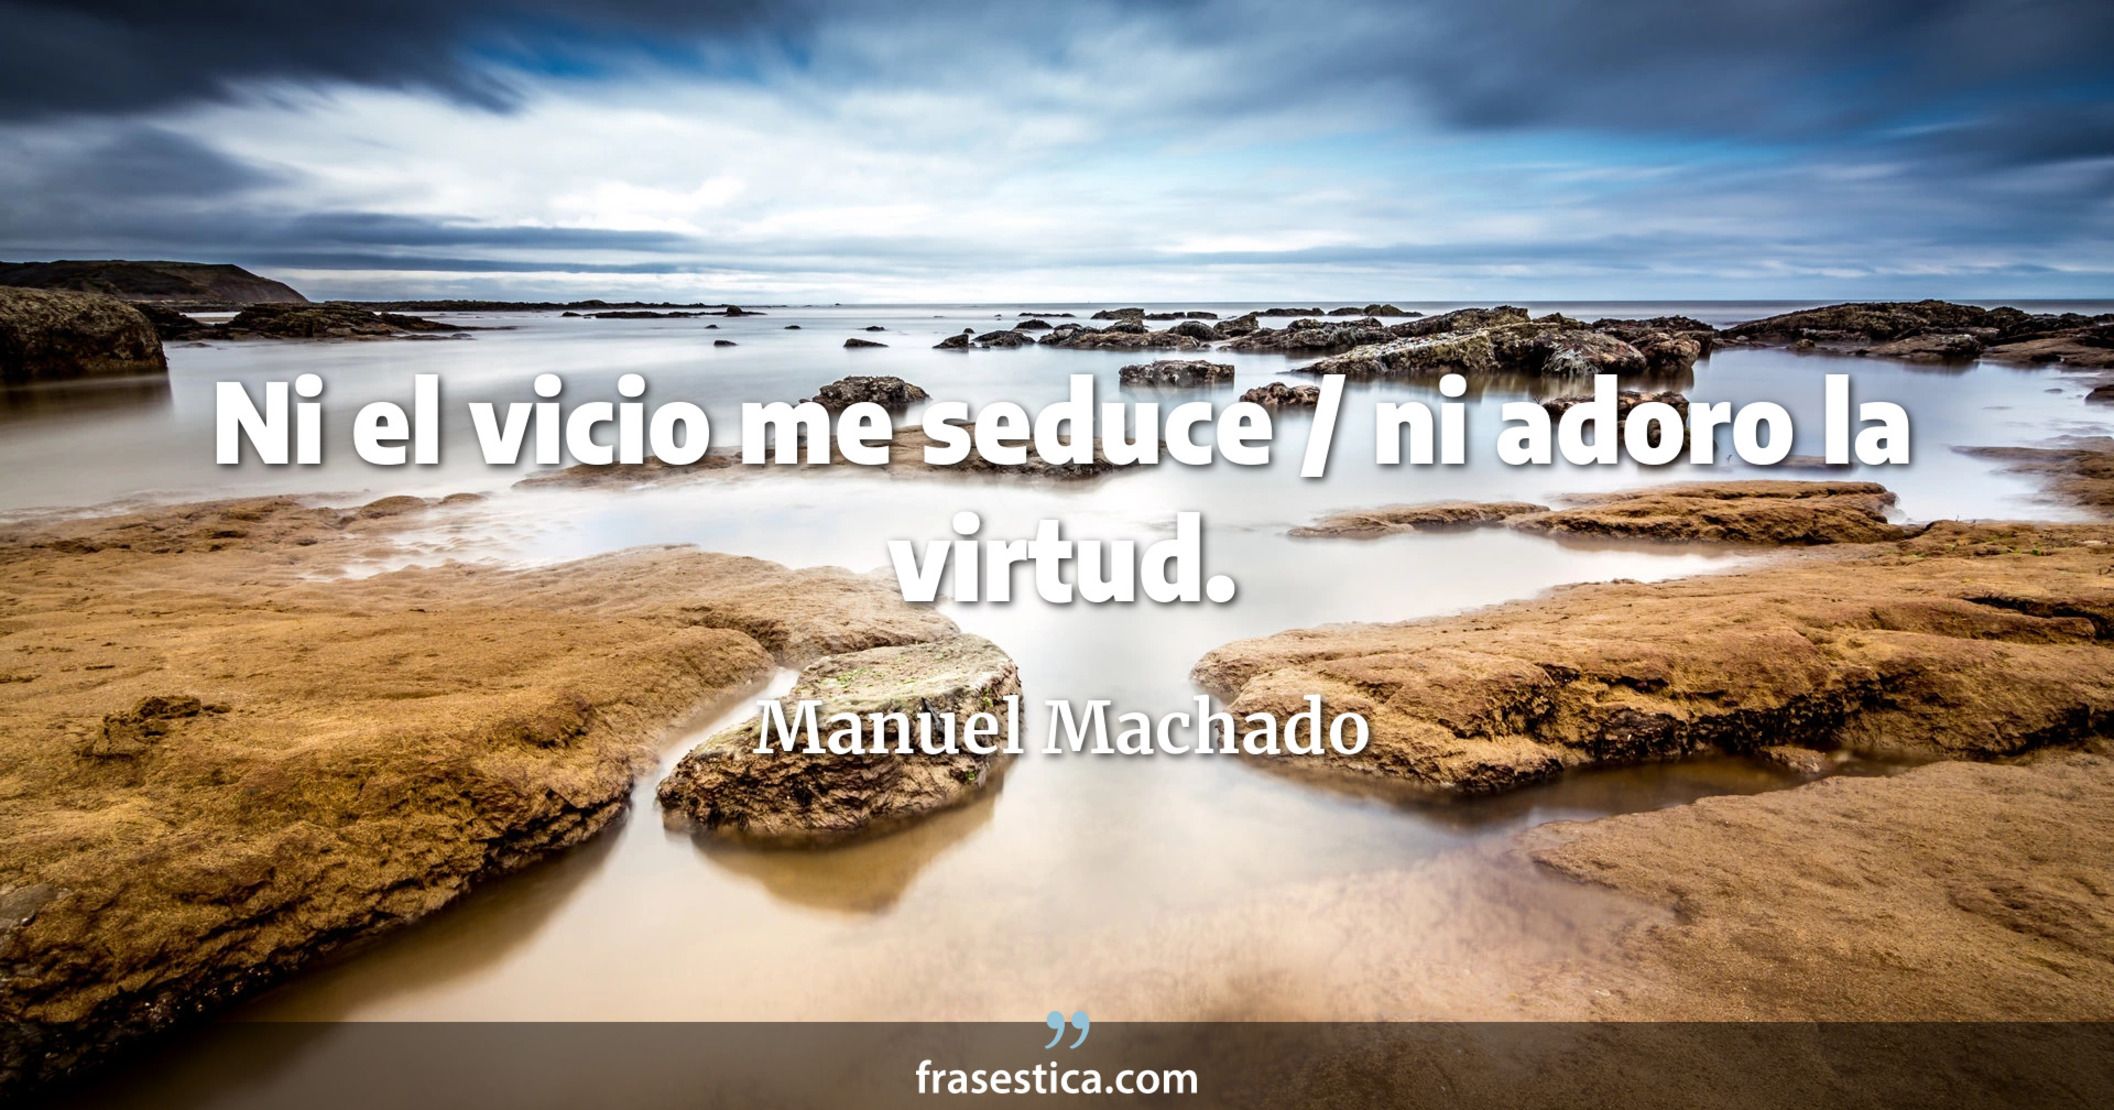 Ni el vicio me seduce / ni adoro la virtud. - Manuel Machado